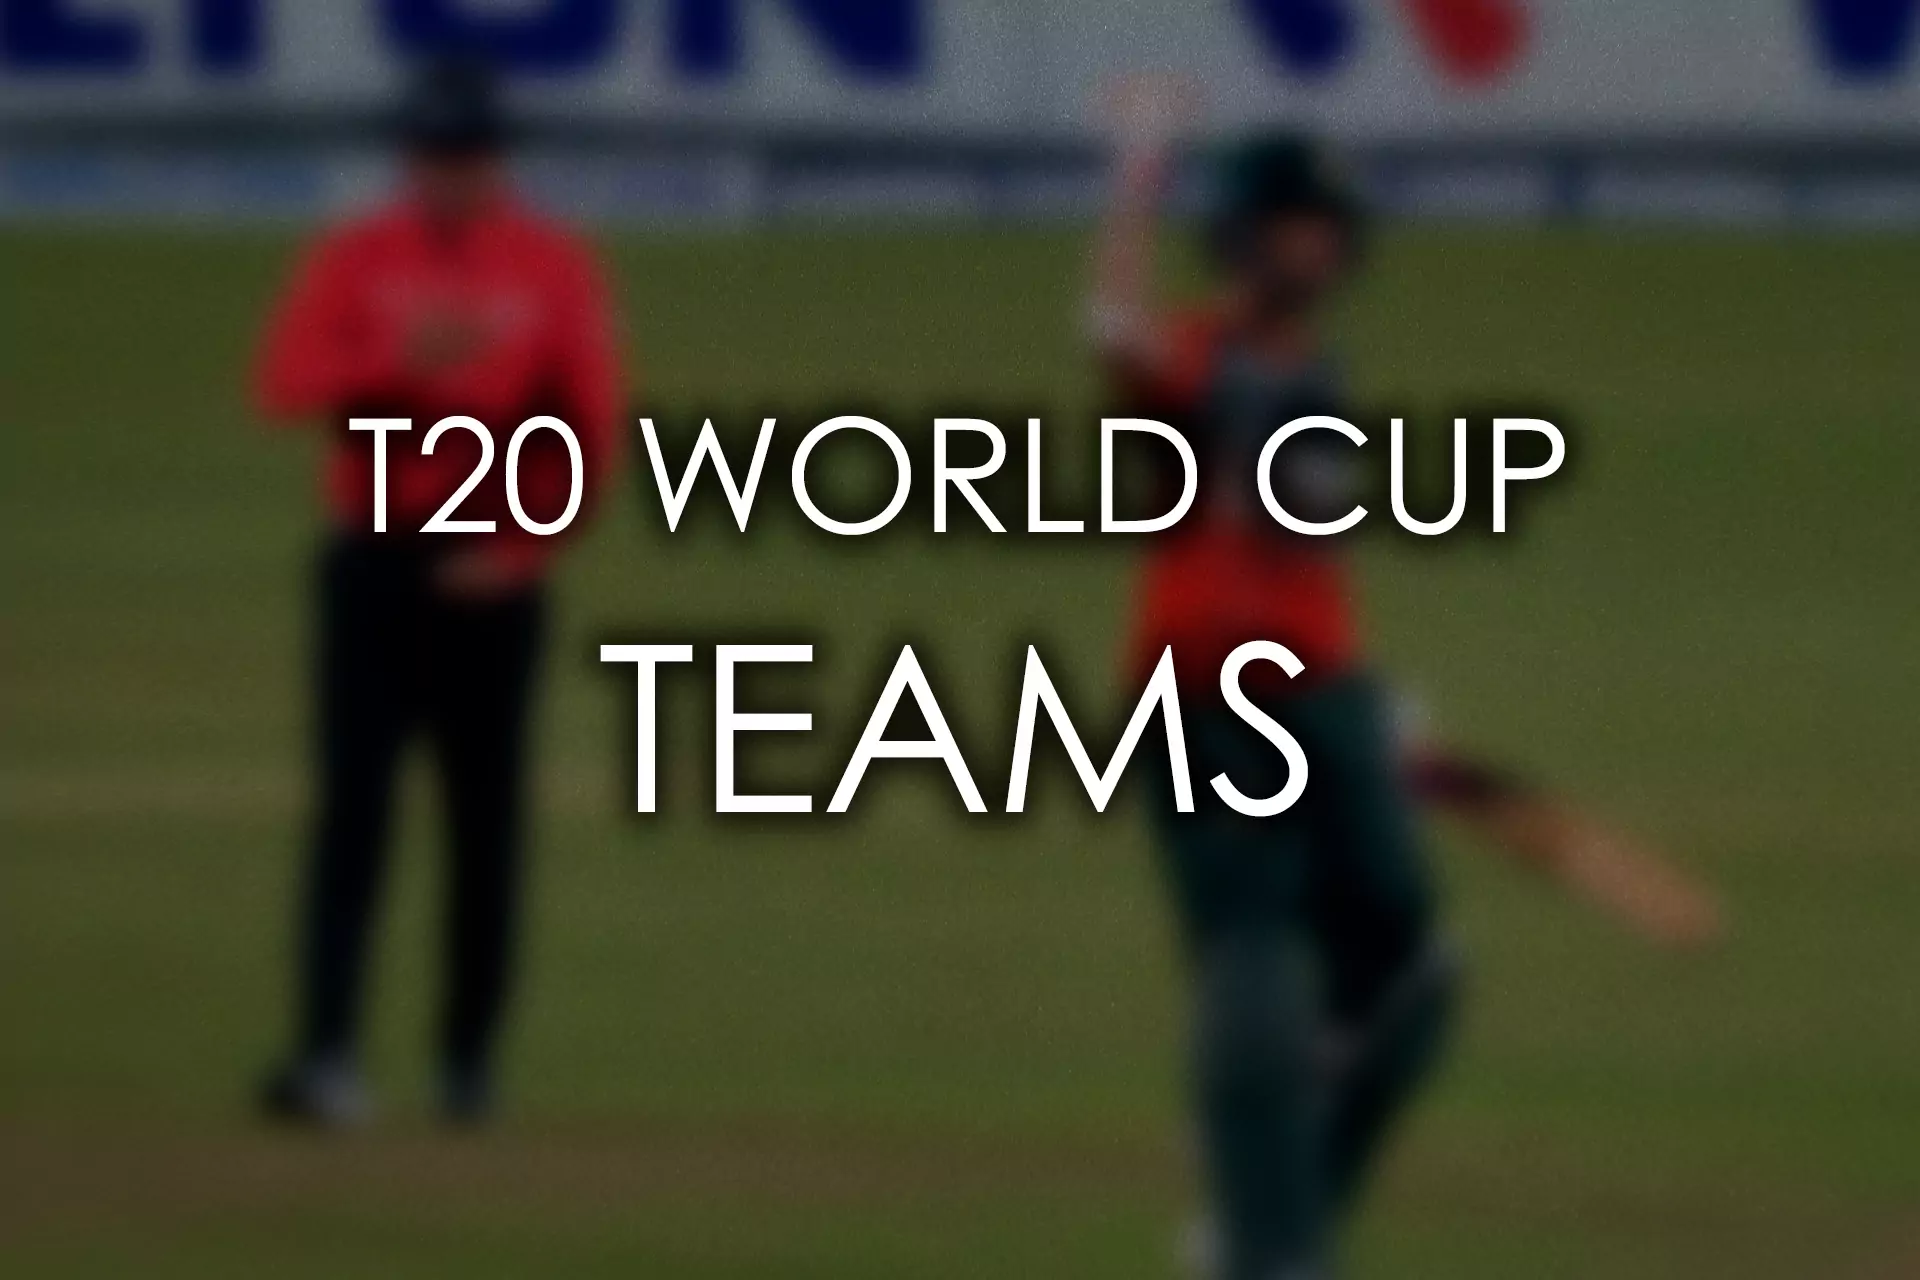 टी20 क्रिकेट वर्ल्ड कप में दुनियाभर से 16 टीमें हिस्सा ले रही हैं।